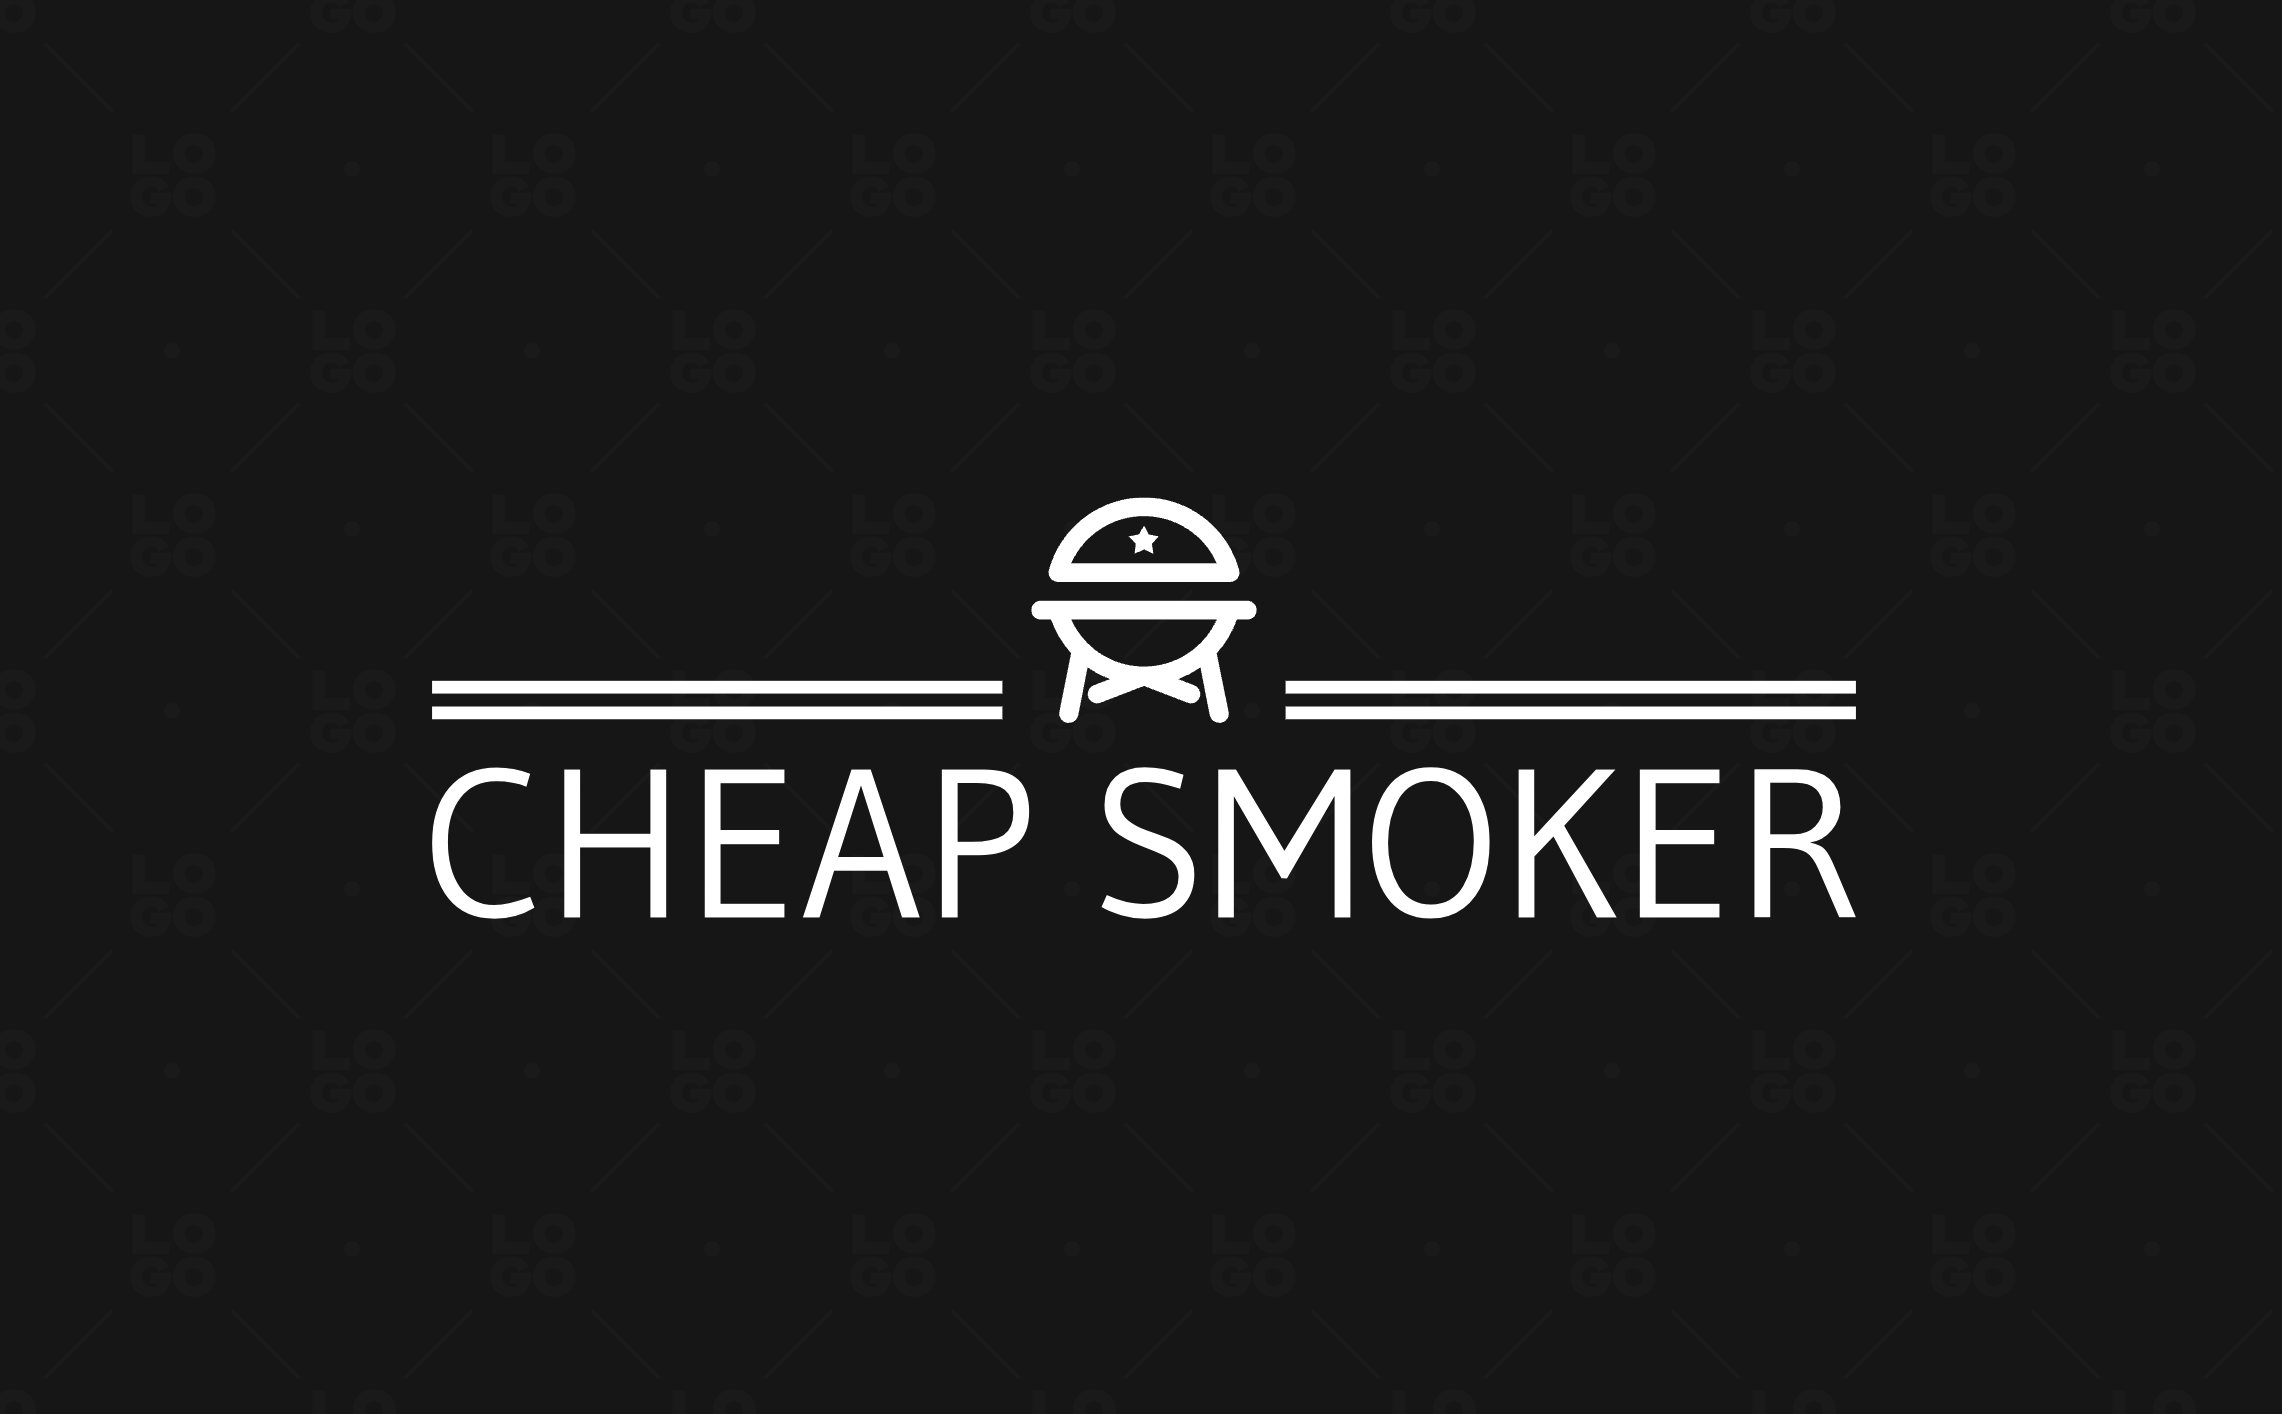 CheapSmoker.com